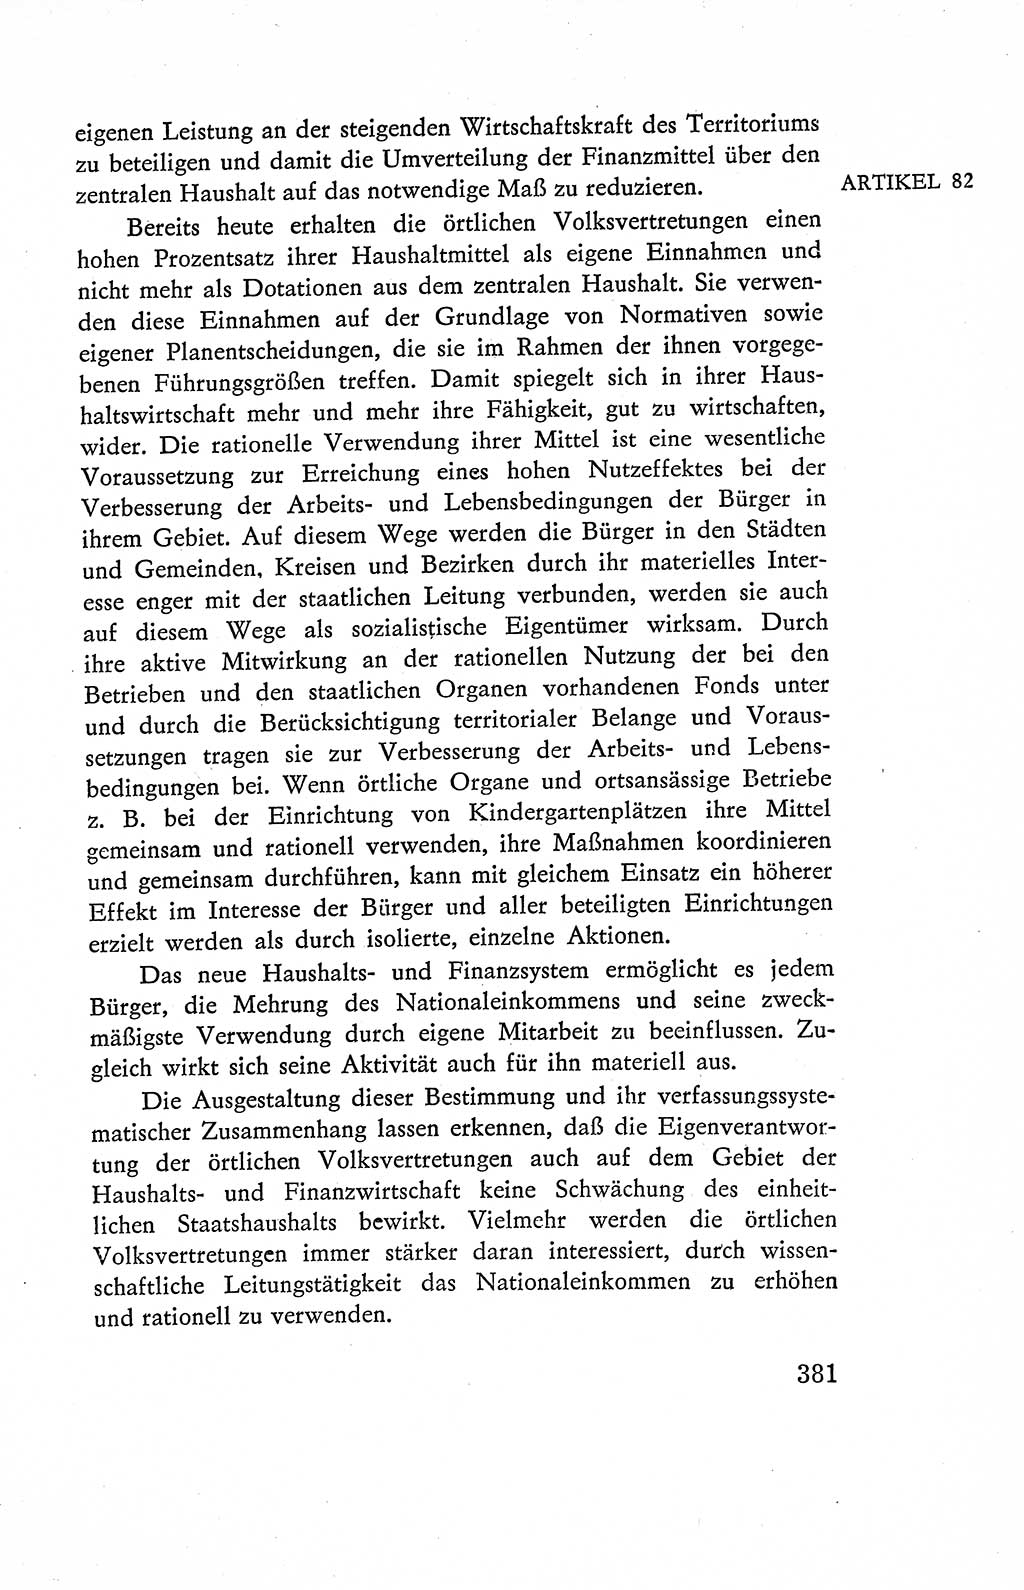 Verfassung der Deutschen Demokratischen Republik (DDR), Dokumente, Kommentar 1969, Band 2, Seite 381 (Verf. DDR Dok. Komm. 1969, Bd. 2, S. 381)